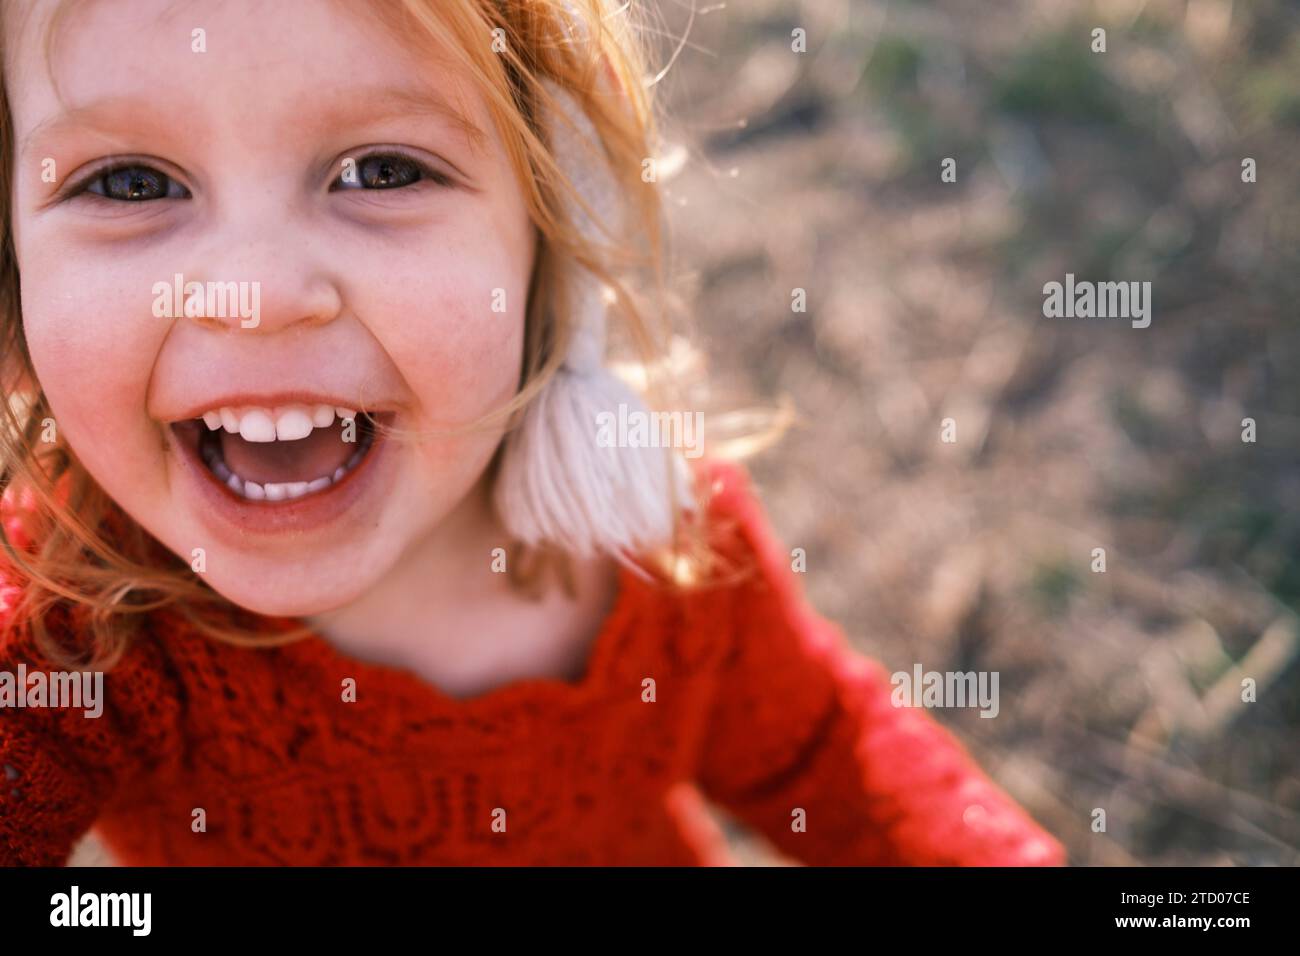 Heureux enfant souriant, regardant la caméra avec des yeux innocents Banque D'Images